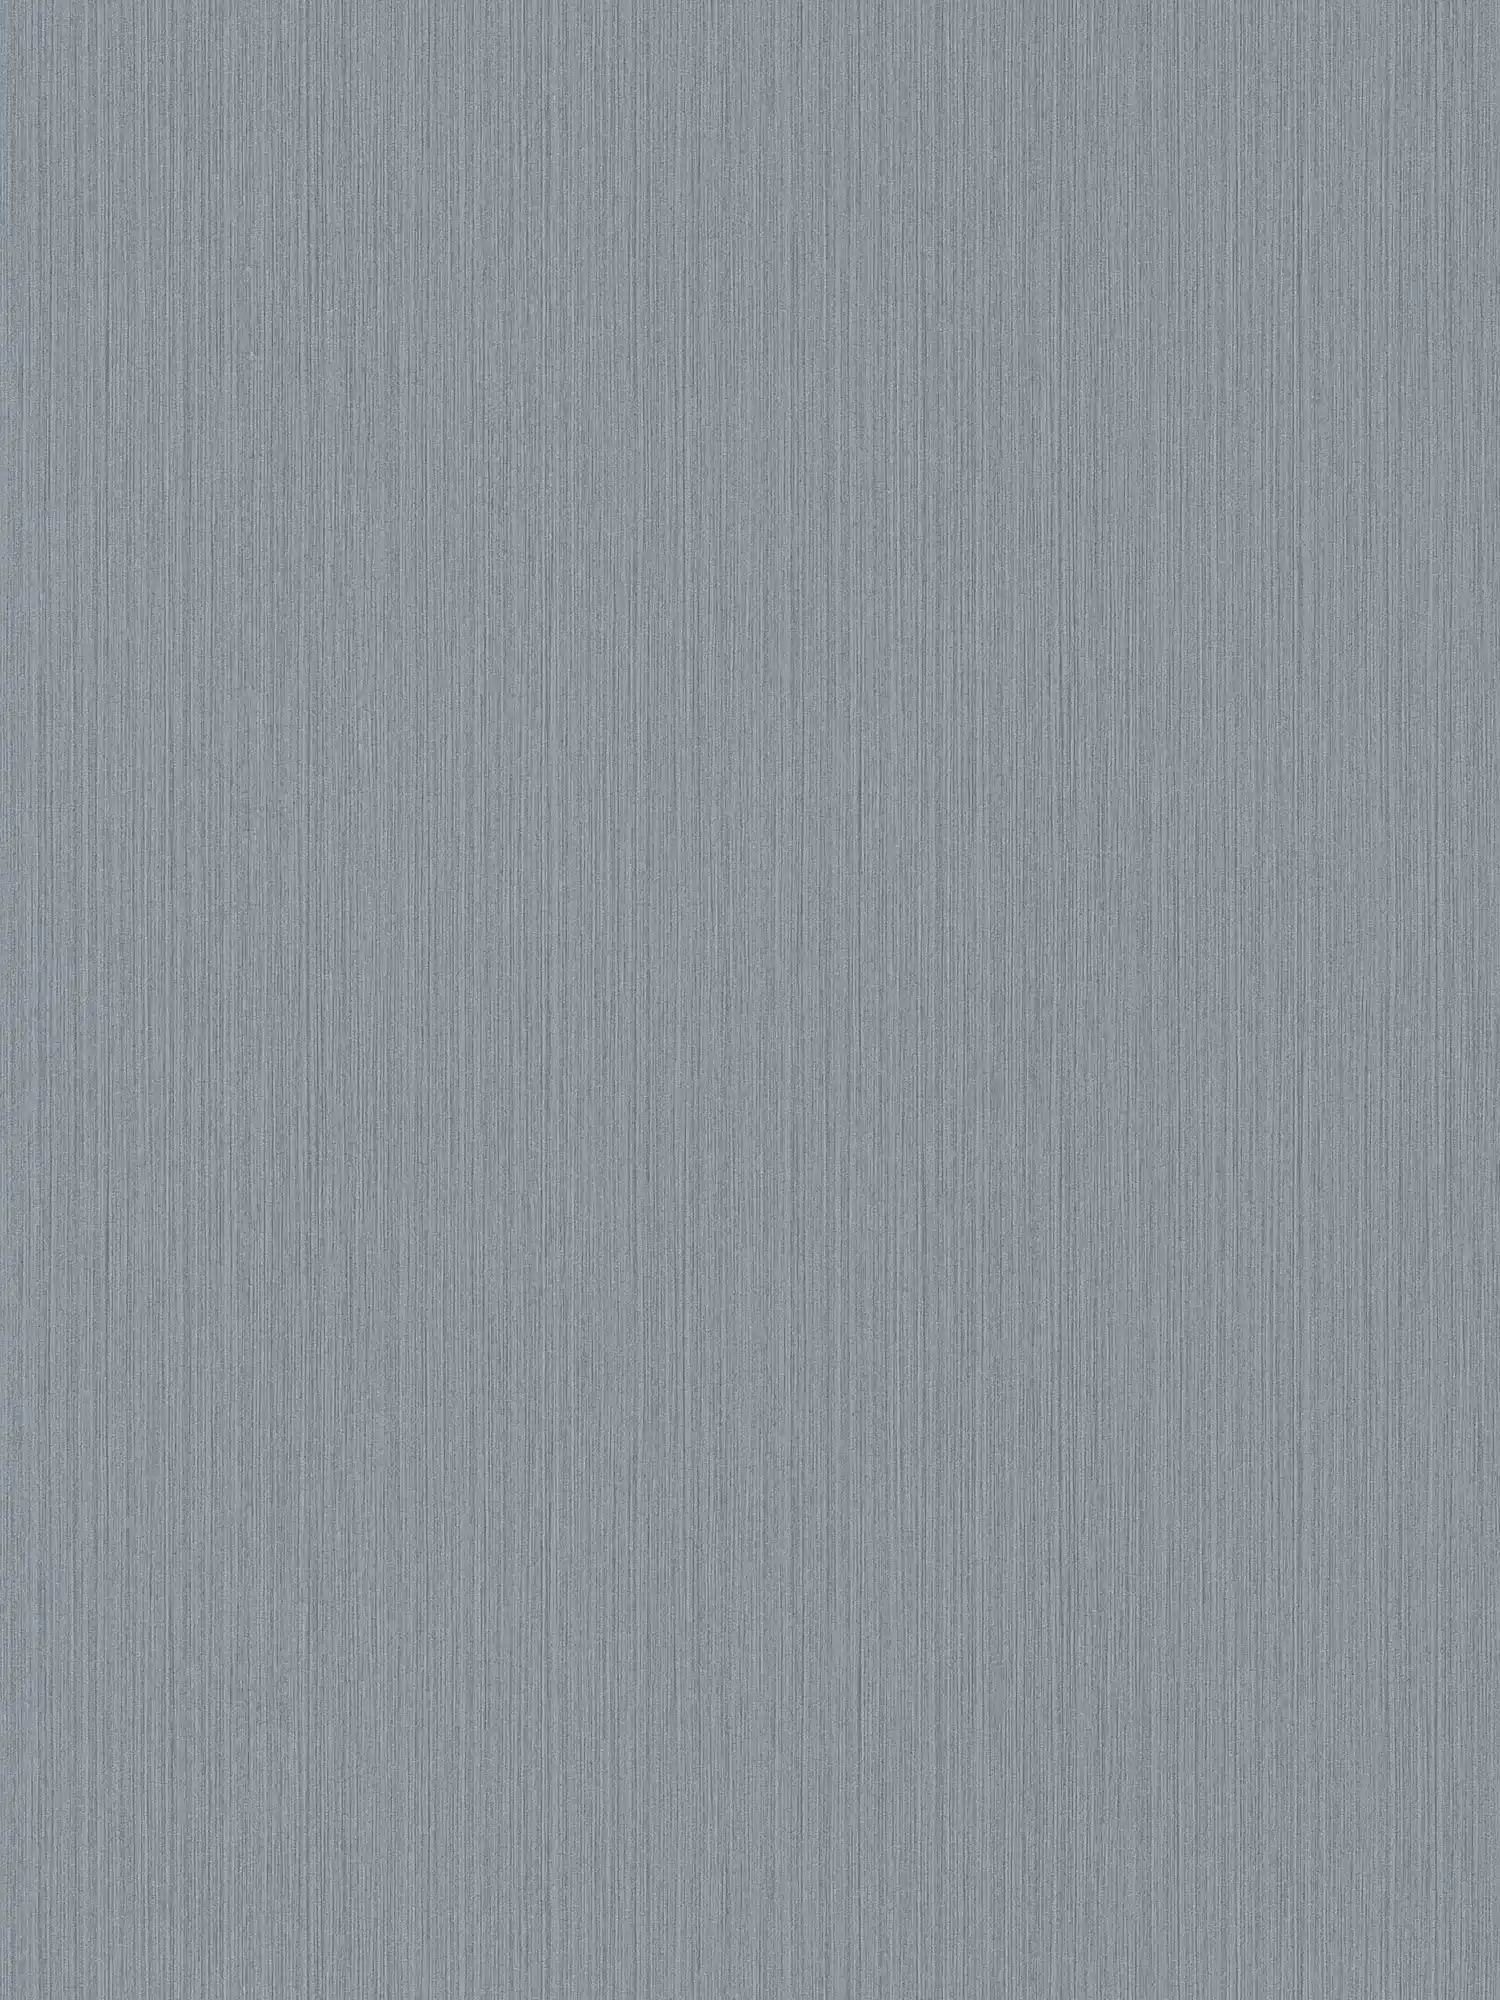 Papier peint uni gris avec effet textile chiné de MICHALSKY
